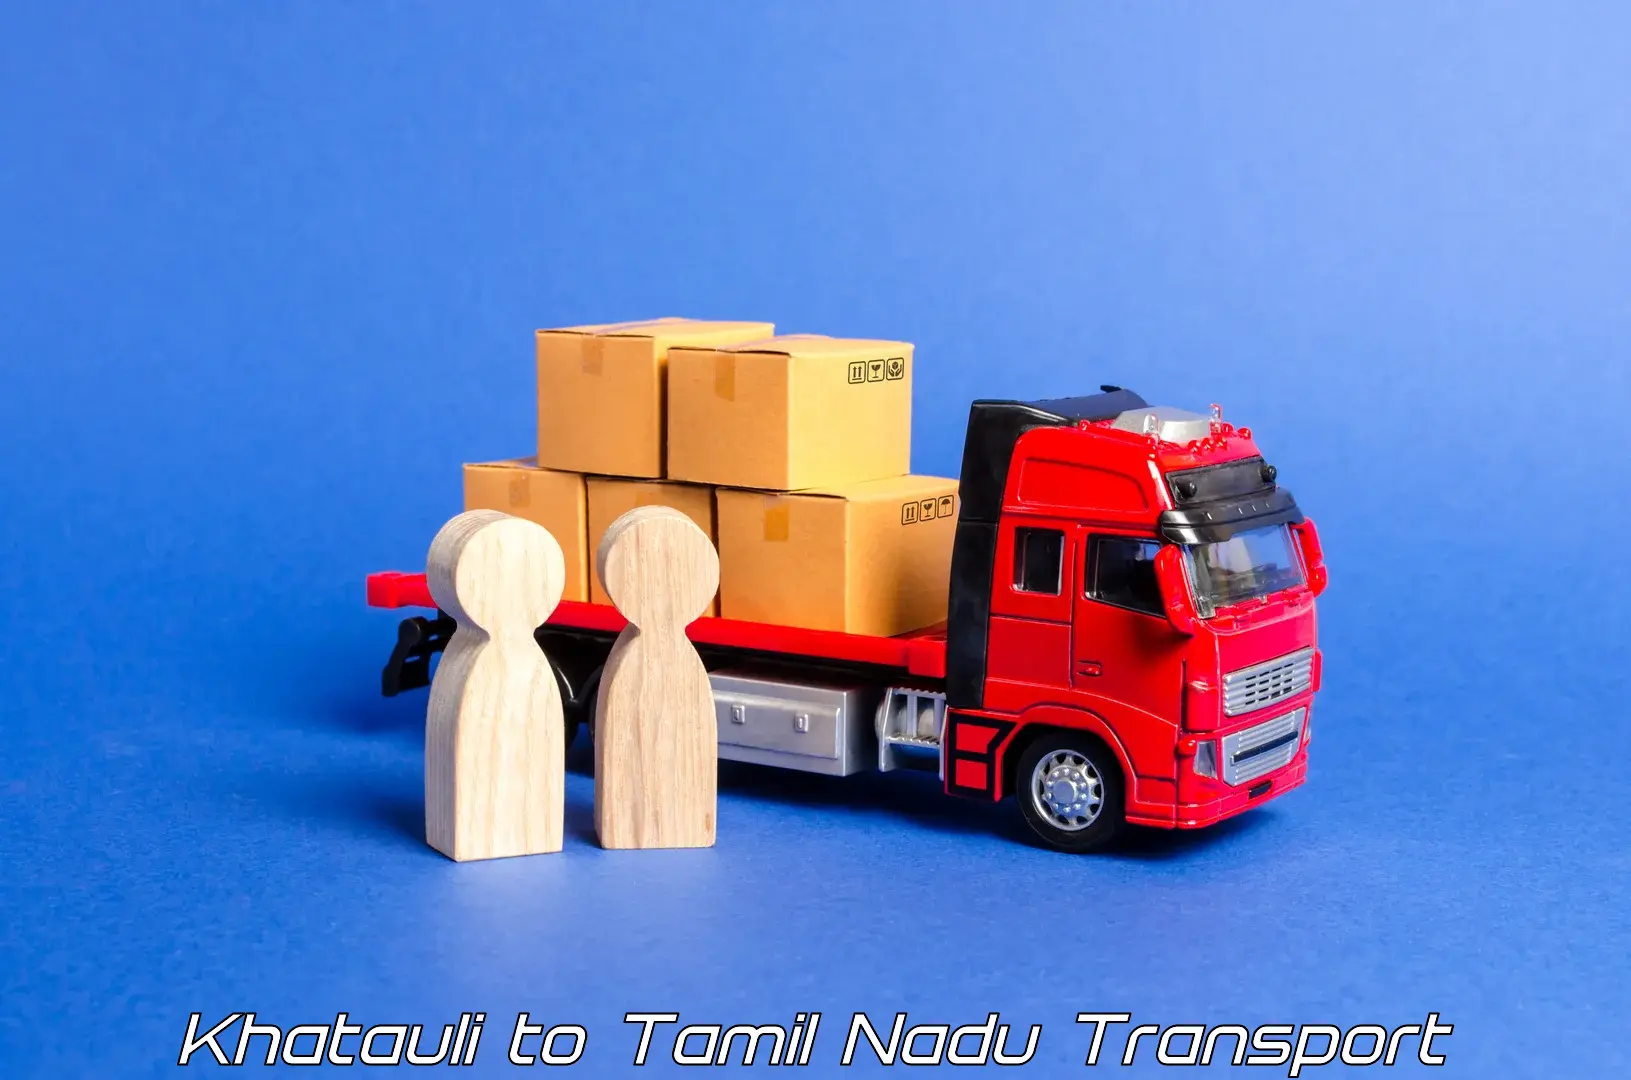 Nationwide transport services Khatauli to Tirukalukundram